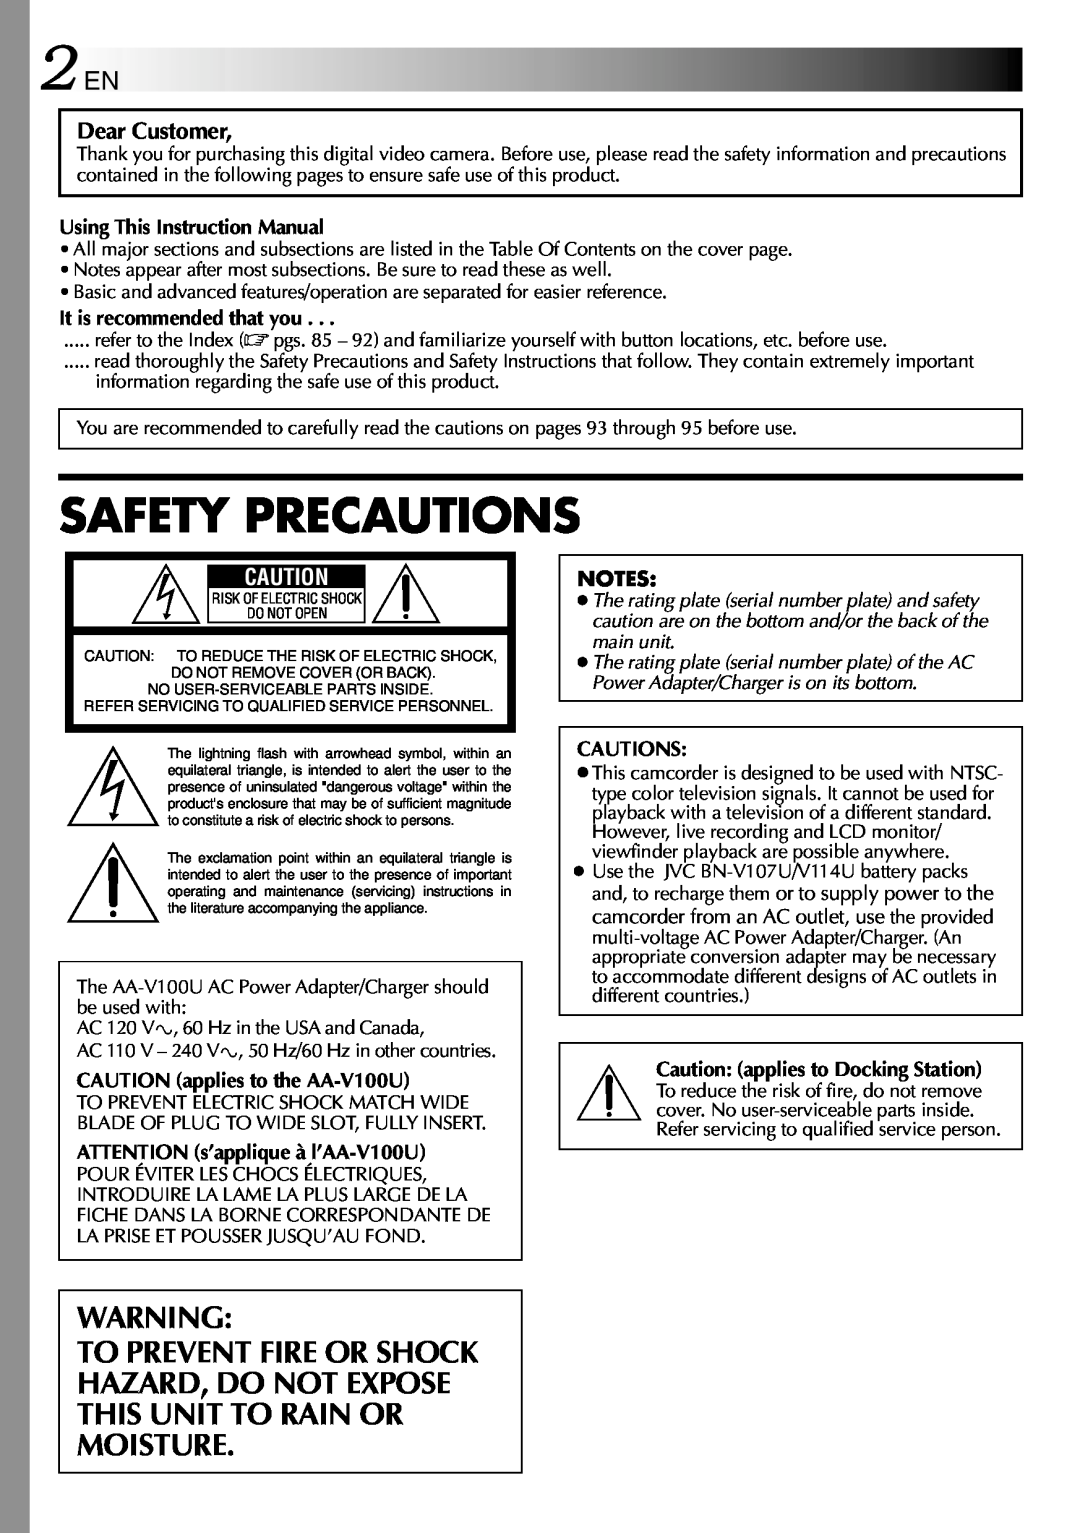 JVC GR-DVP3 specifications 2 EN, Dear Customer, Safety Precautions 